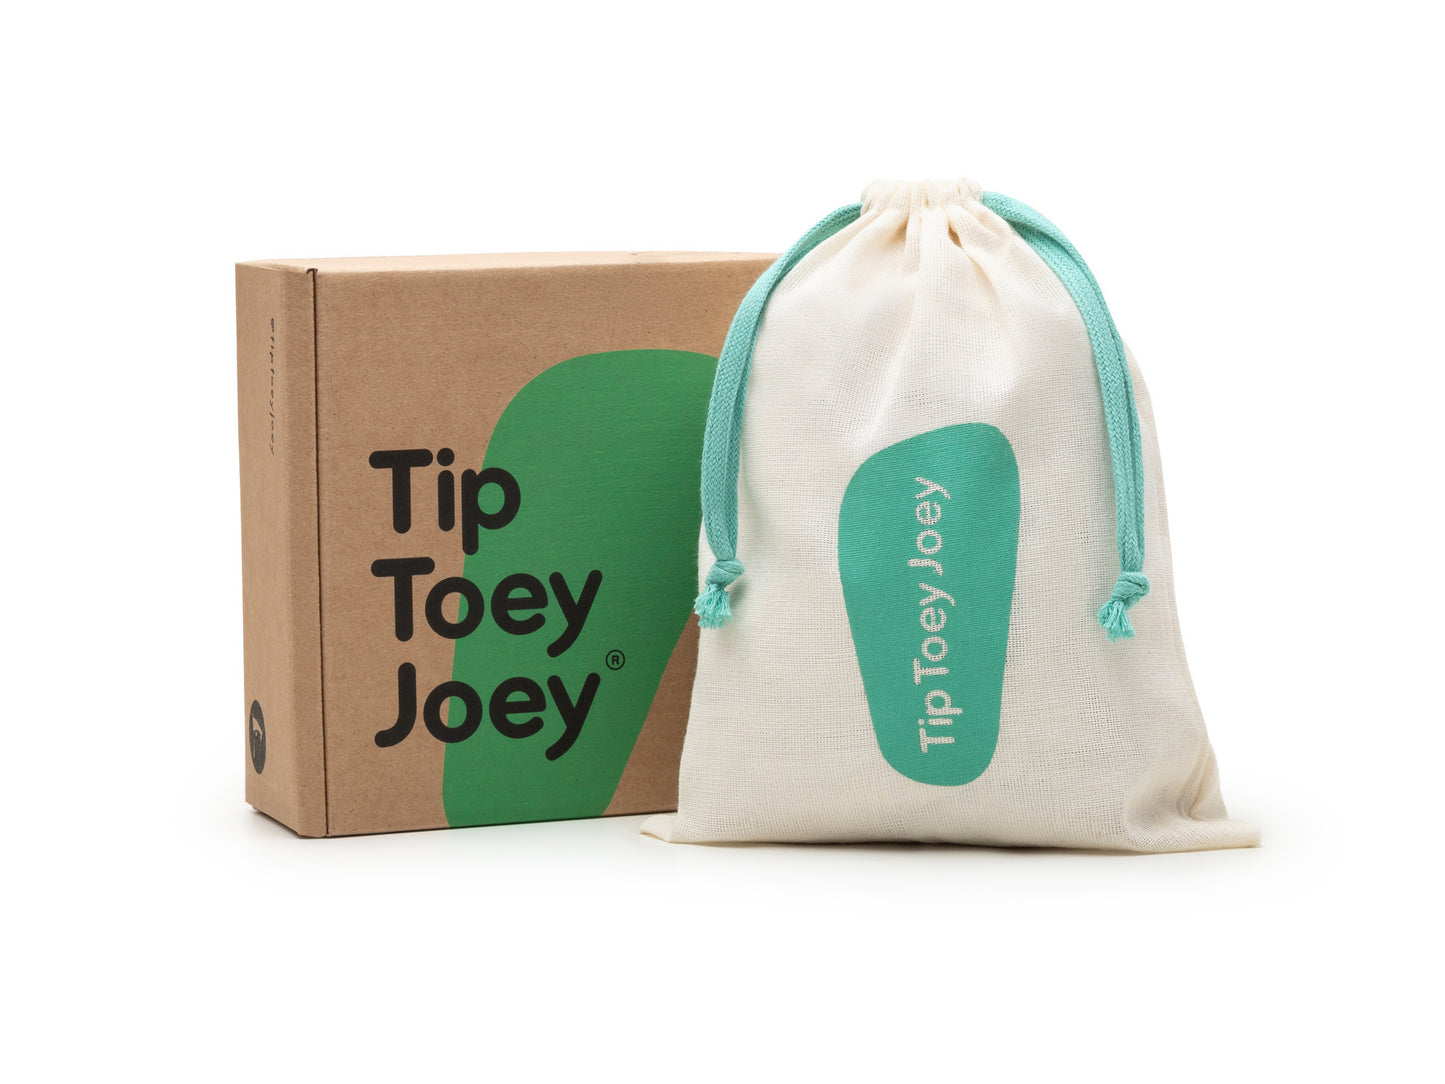 Tip Toey Joey - Ténis Ollie Candy Dream